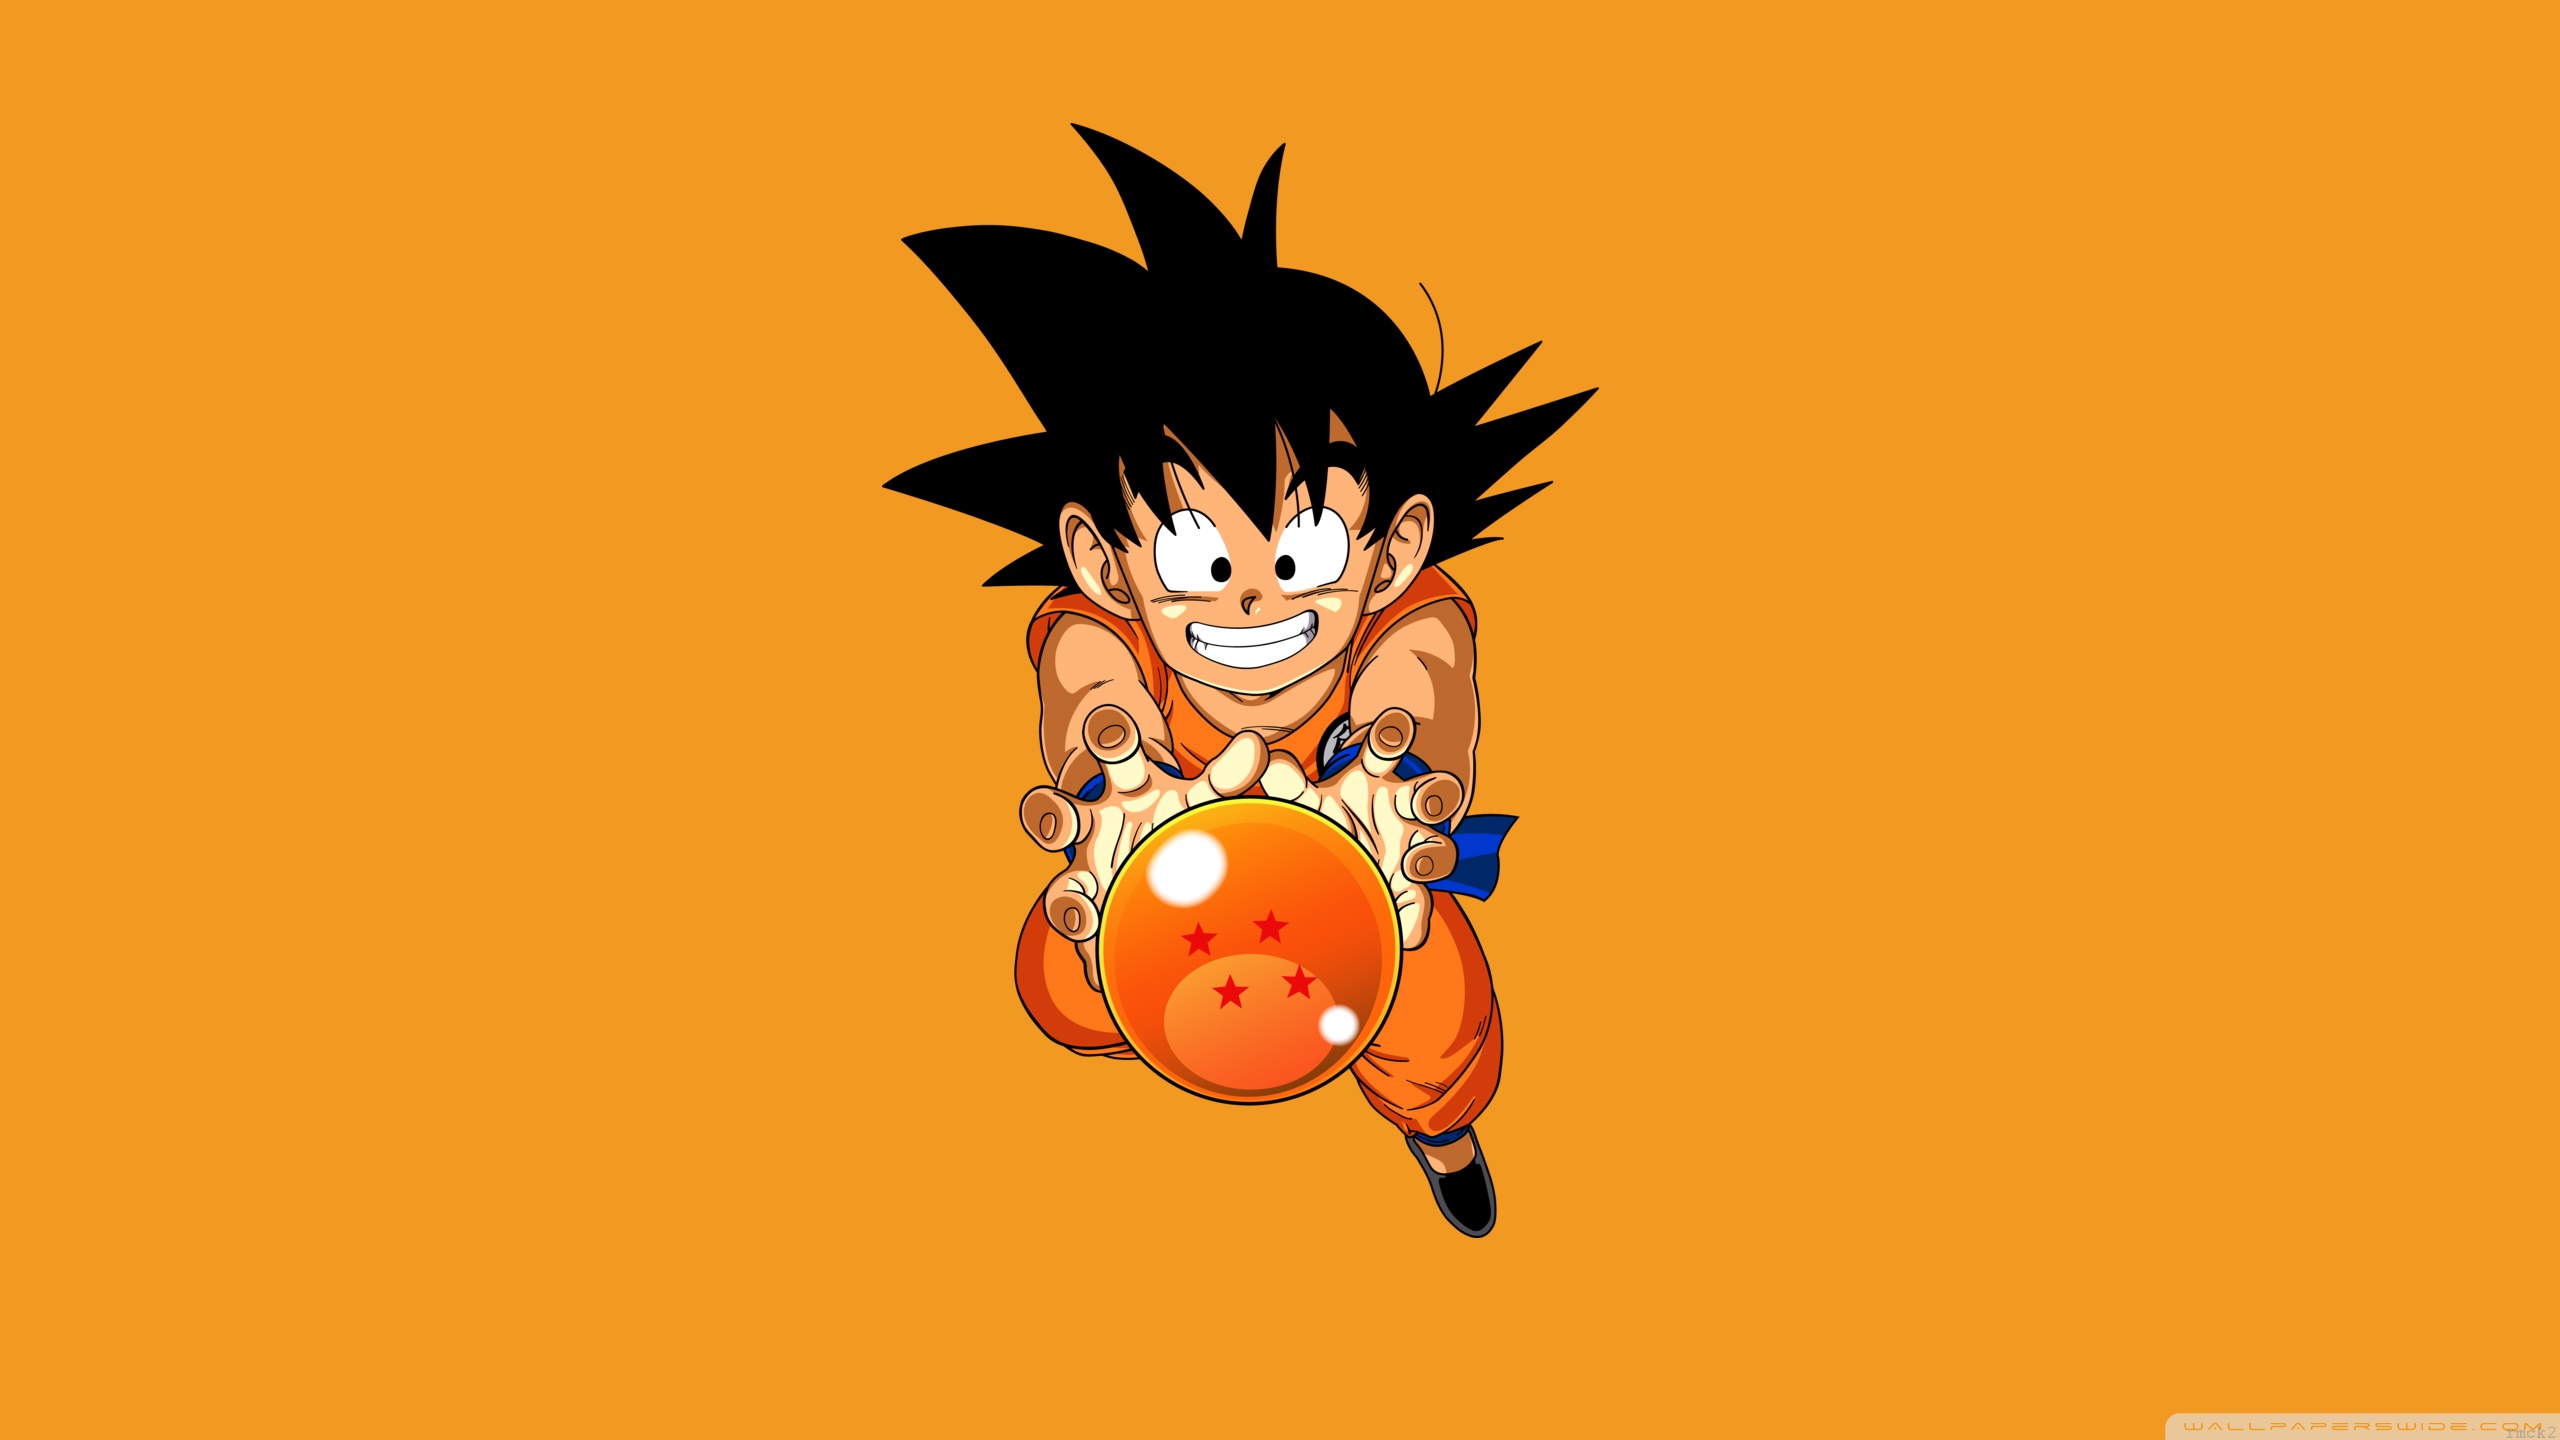 Goku Wallpaper Hd - Fondo Iphone Dragon Ball - HD Wallpaper 